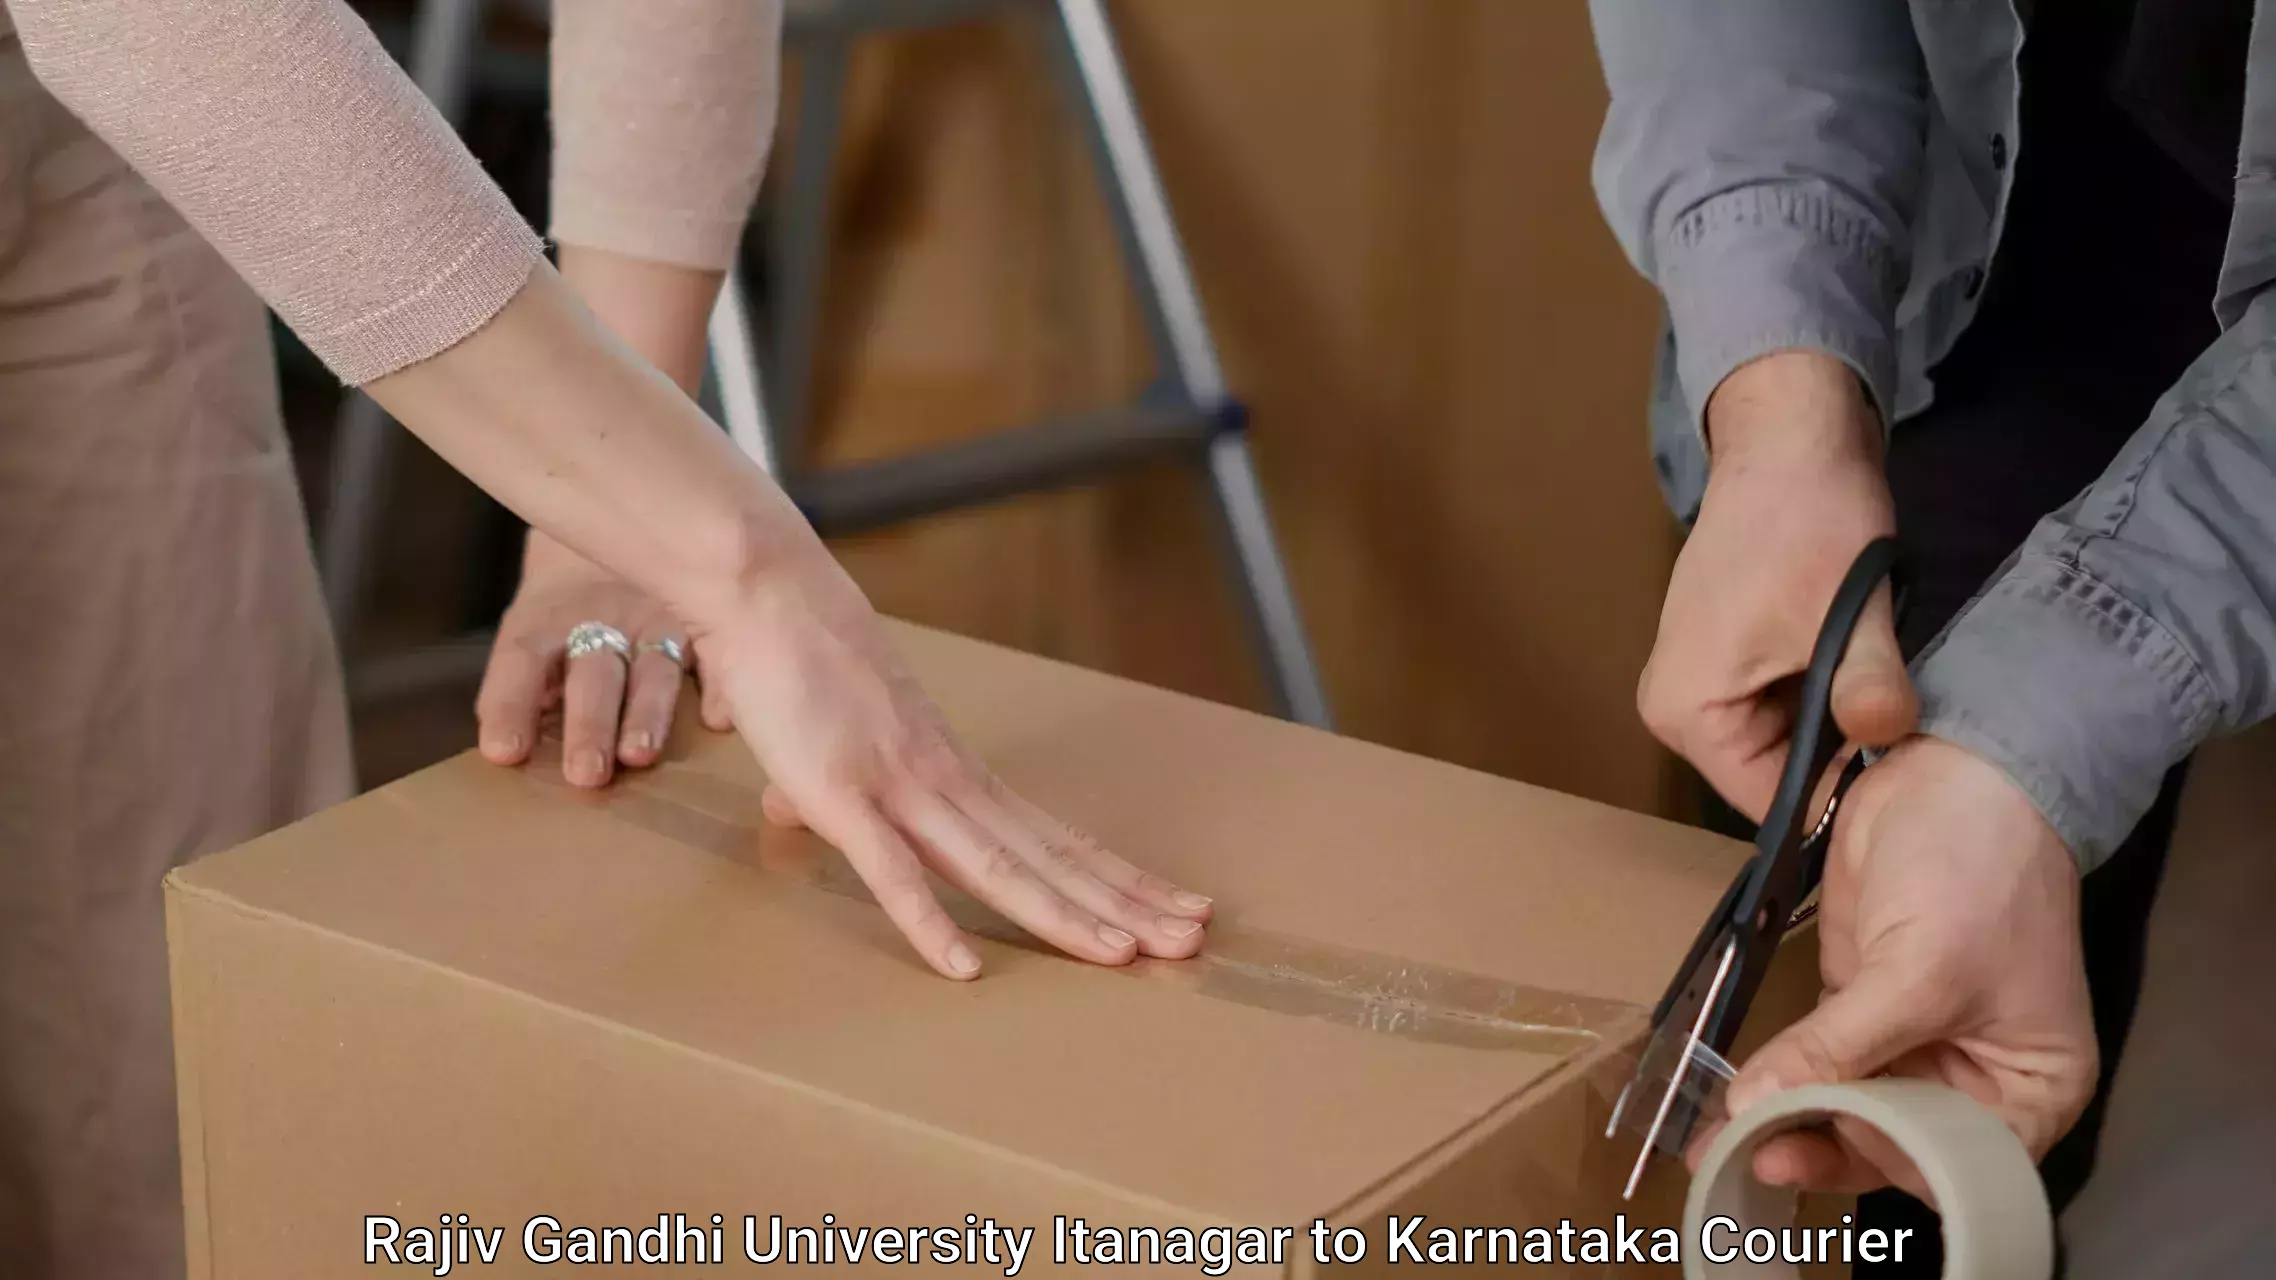 Furniture moving and handling Rajiv Gandhi University Itanagar to Sagara